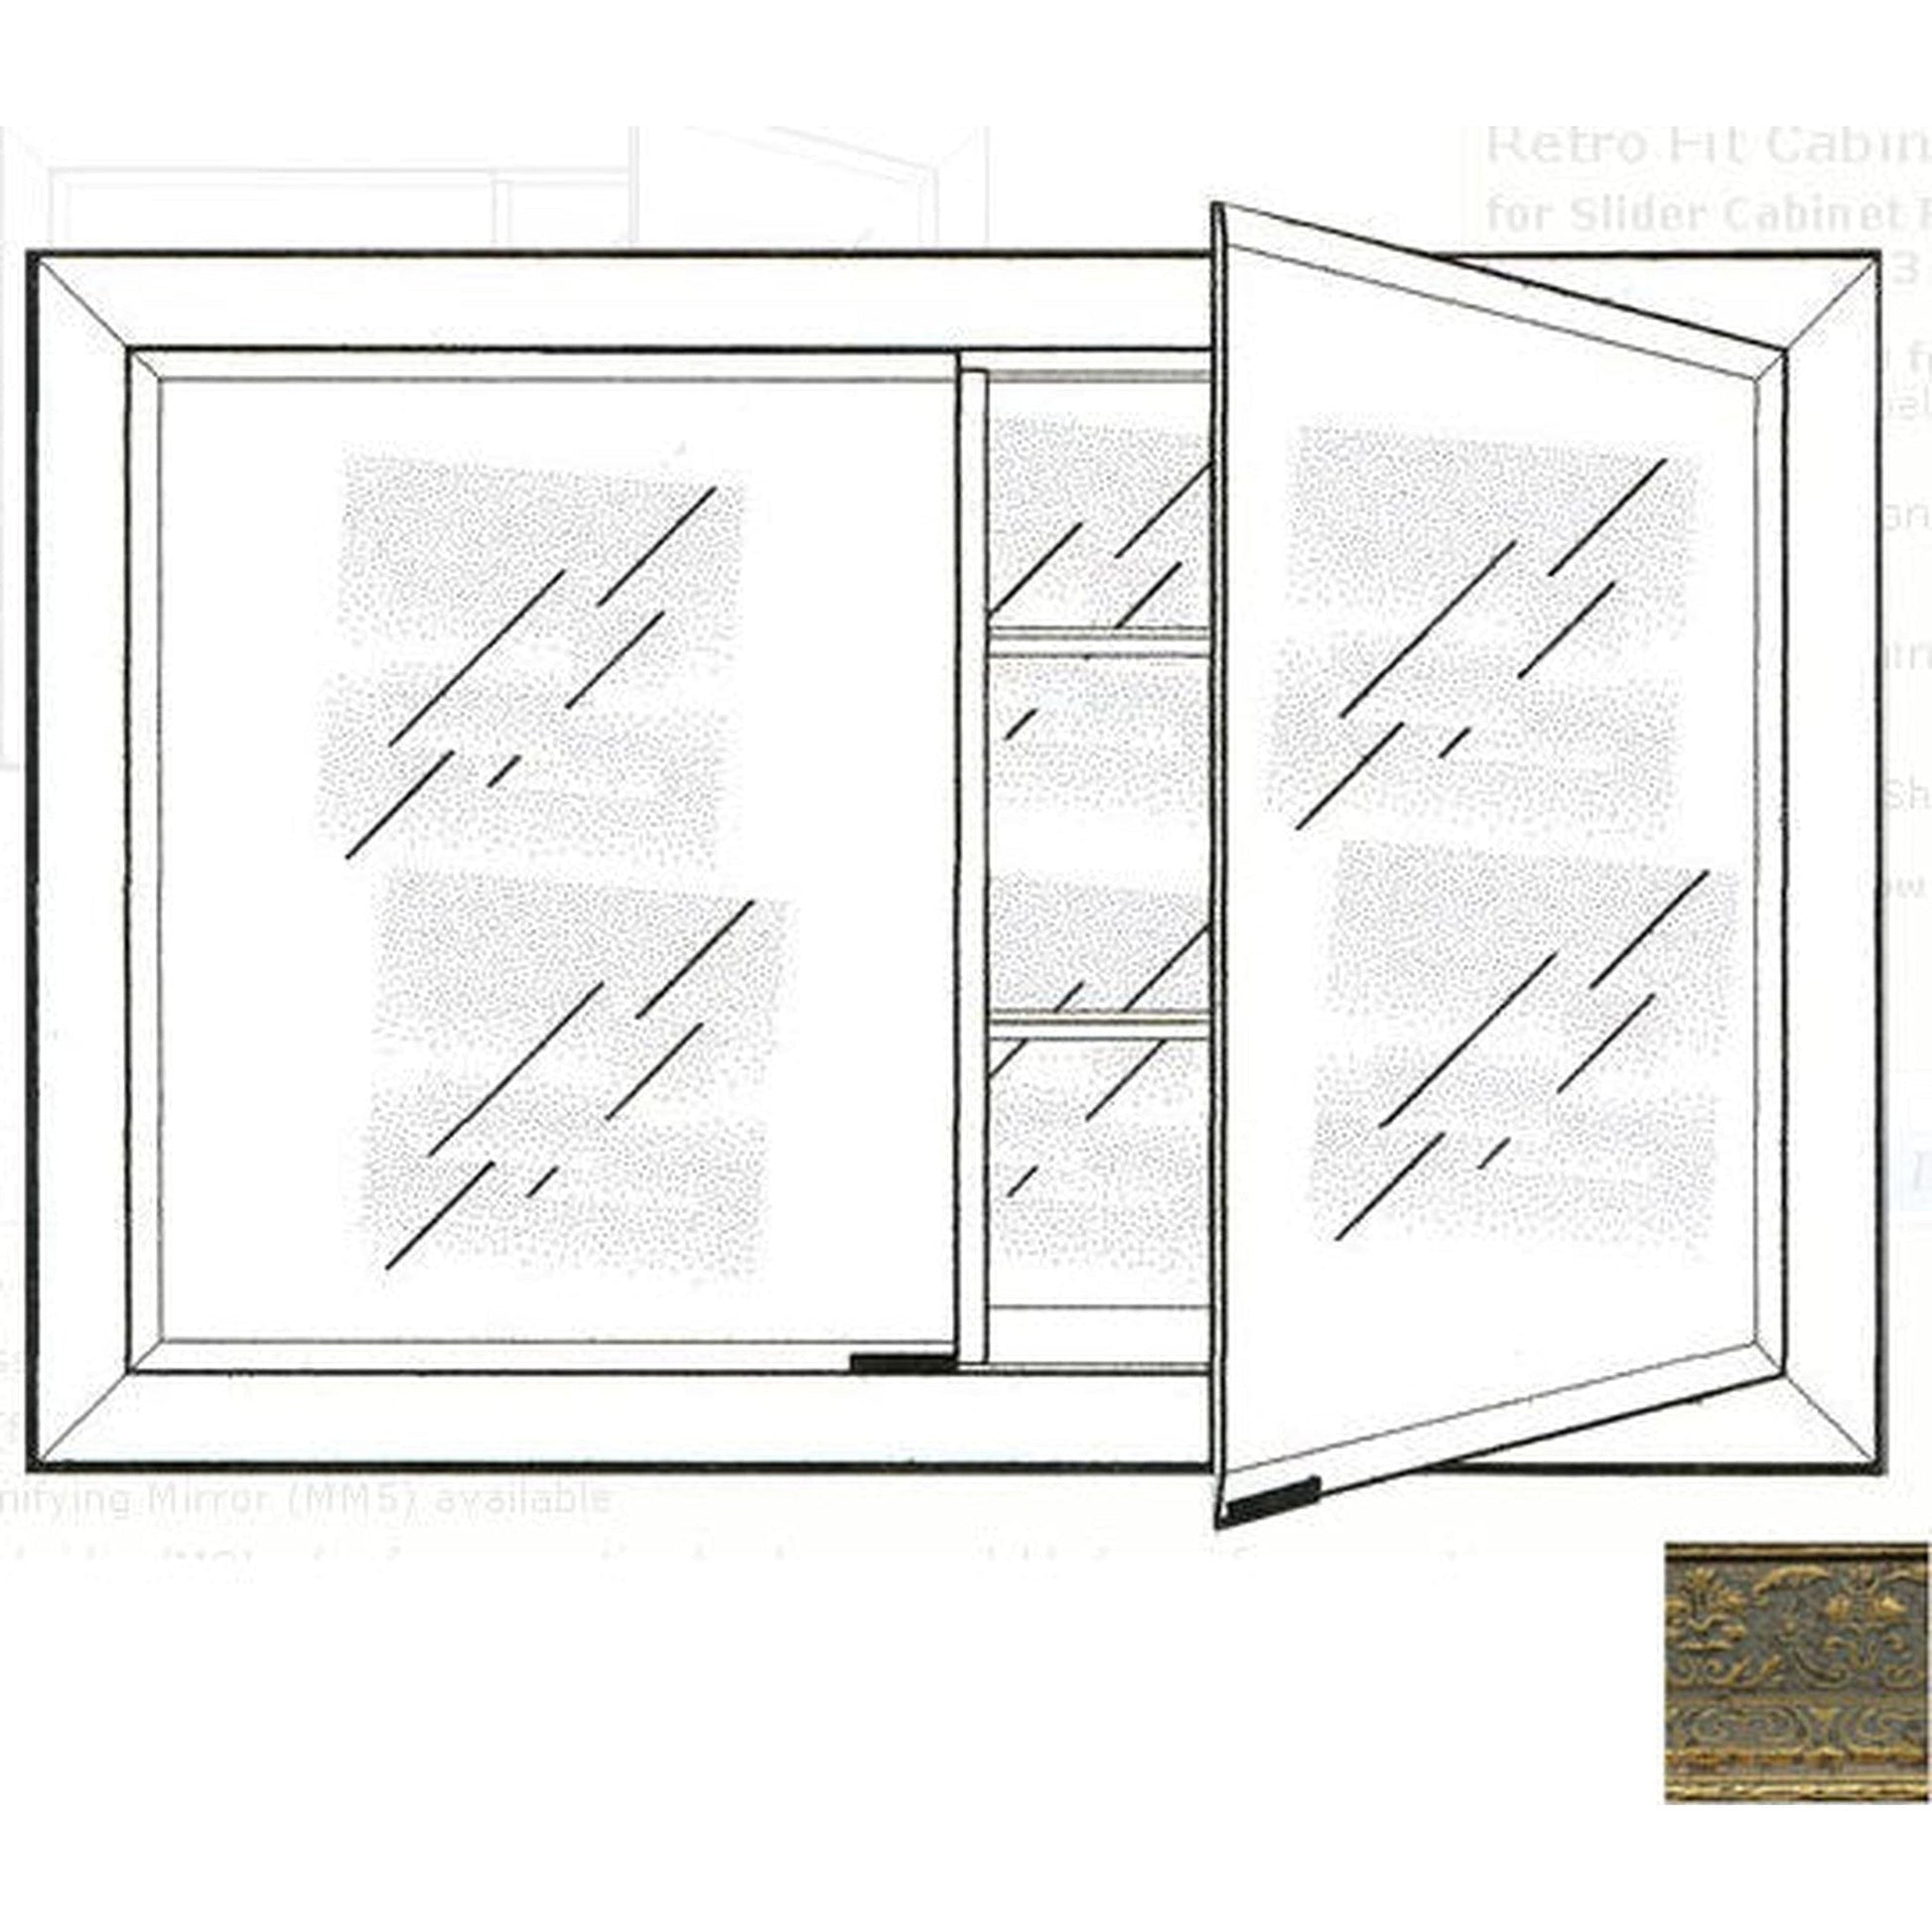 Afina Signature 27" x 21" Regal Antique Gold Recessed Retro-Fit Double Door Medicine Cabinet With Beveled Edge Mirror